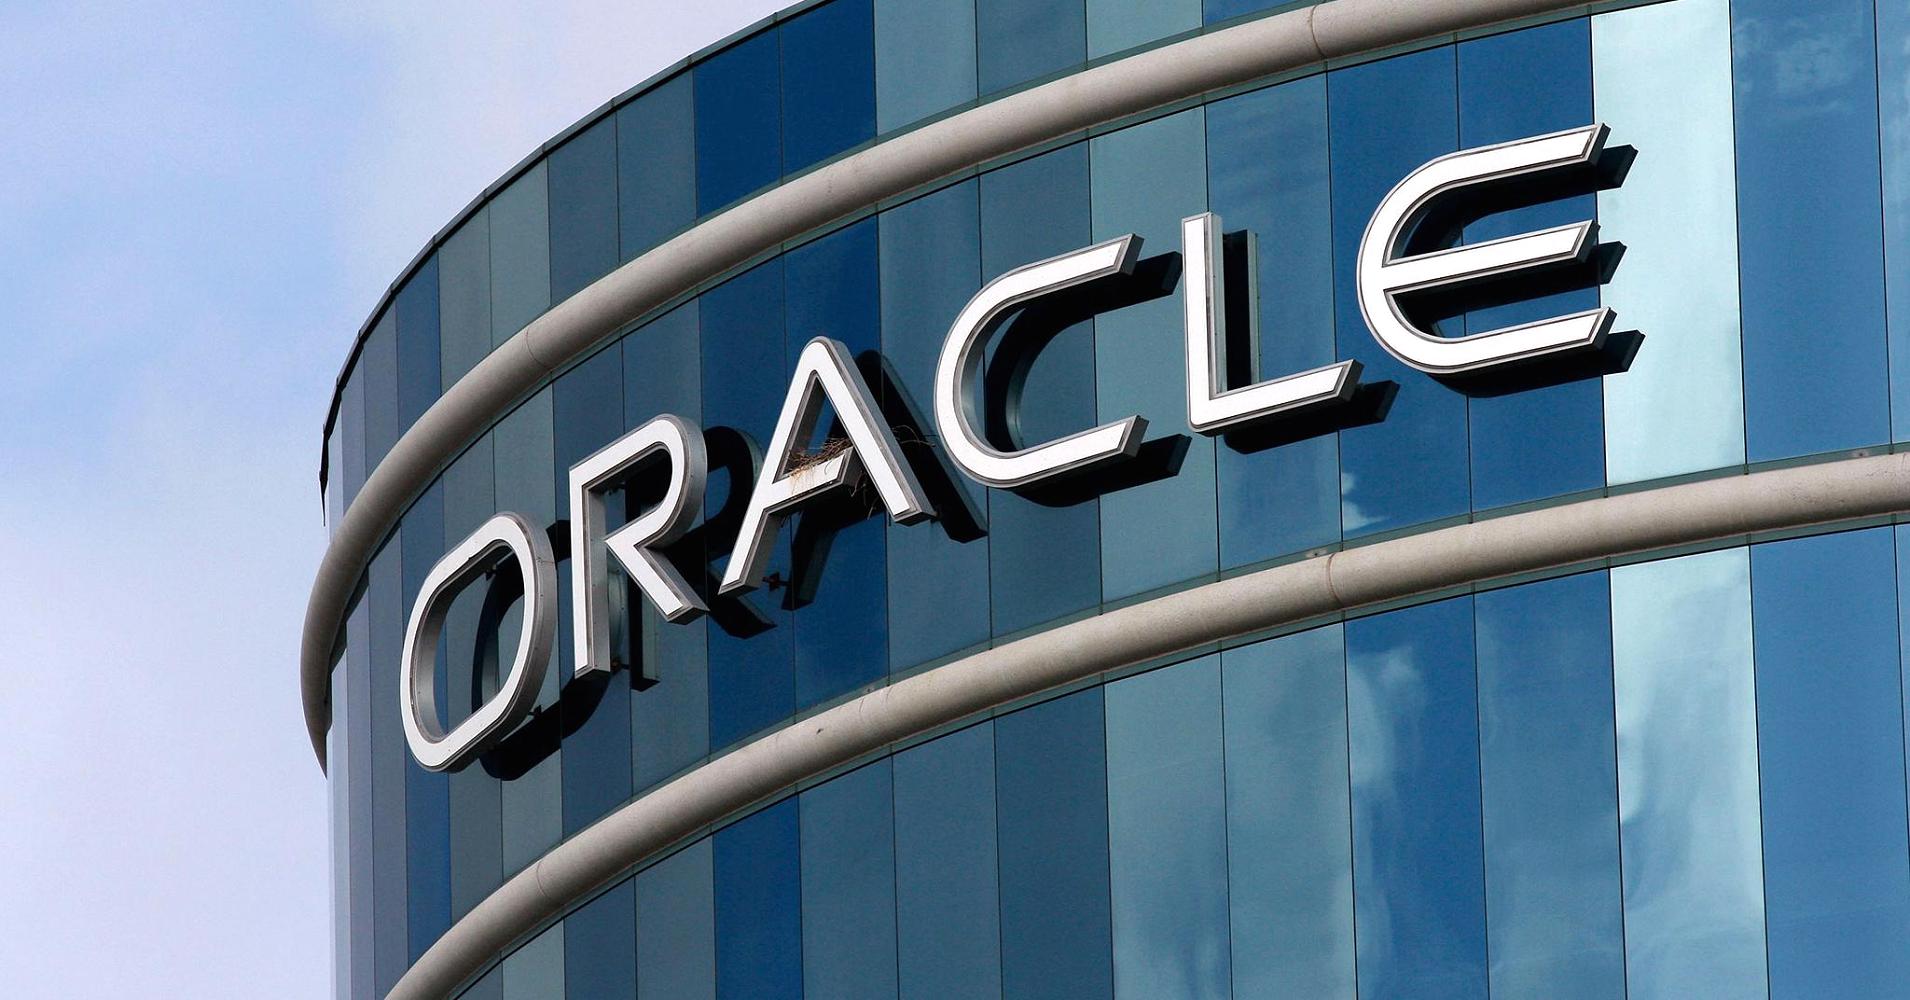 معرفی پایگاه داده Oracle